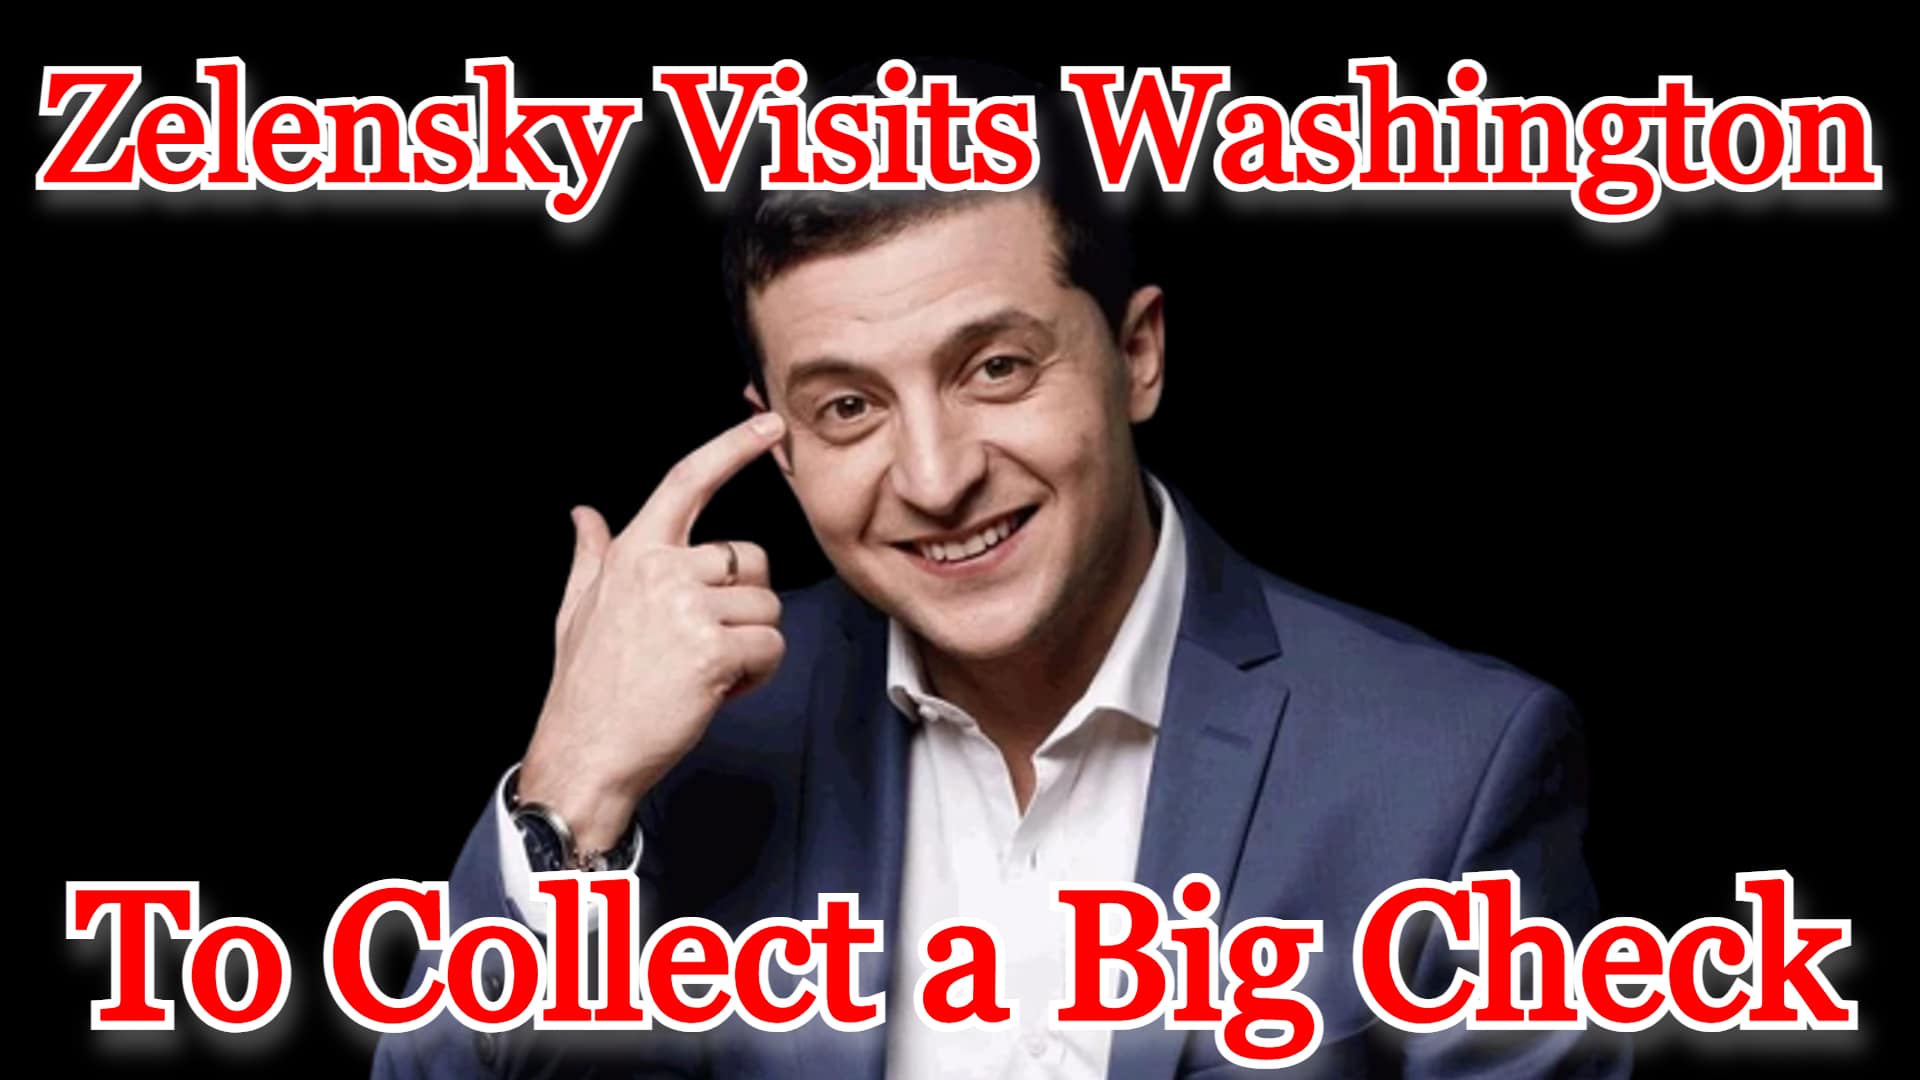 COI #365: Zelensky Visits Washington to Collect a Big Check